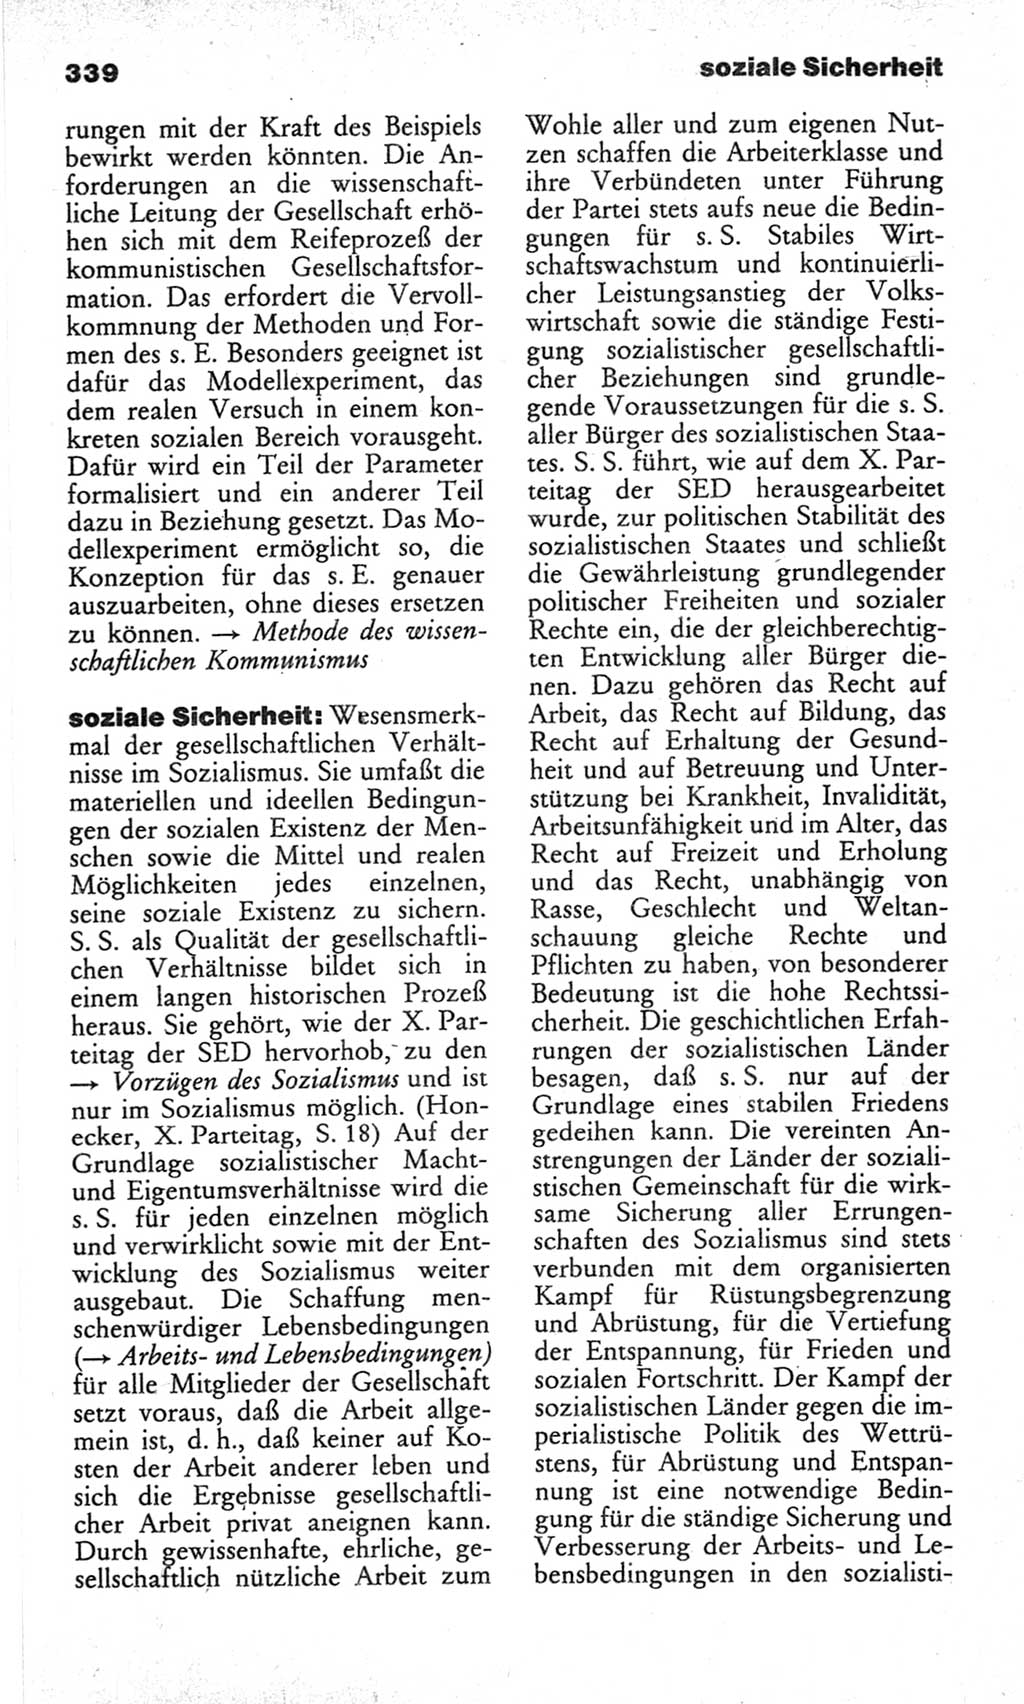 Wörterbuch des wissenschaftlichen Kommunismus [Deutsche Demokratische Republik (DDR)] 1982, Seite 339 (Wb. wiss. Komm. DDR 1982, S. 339)